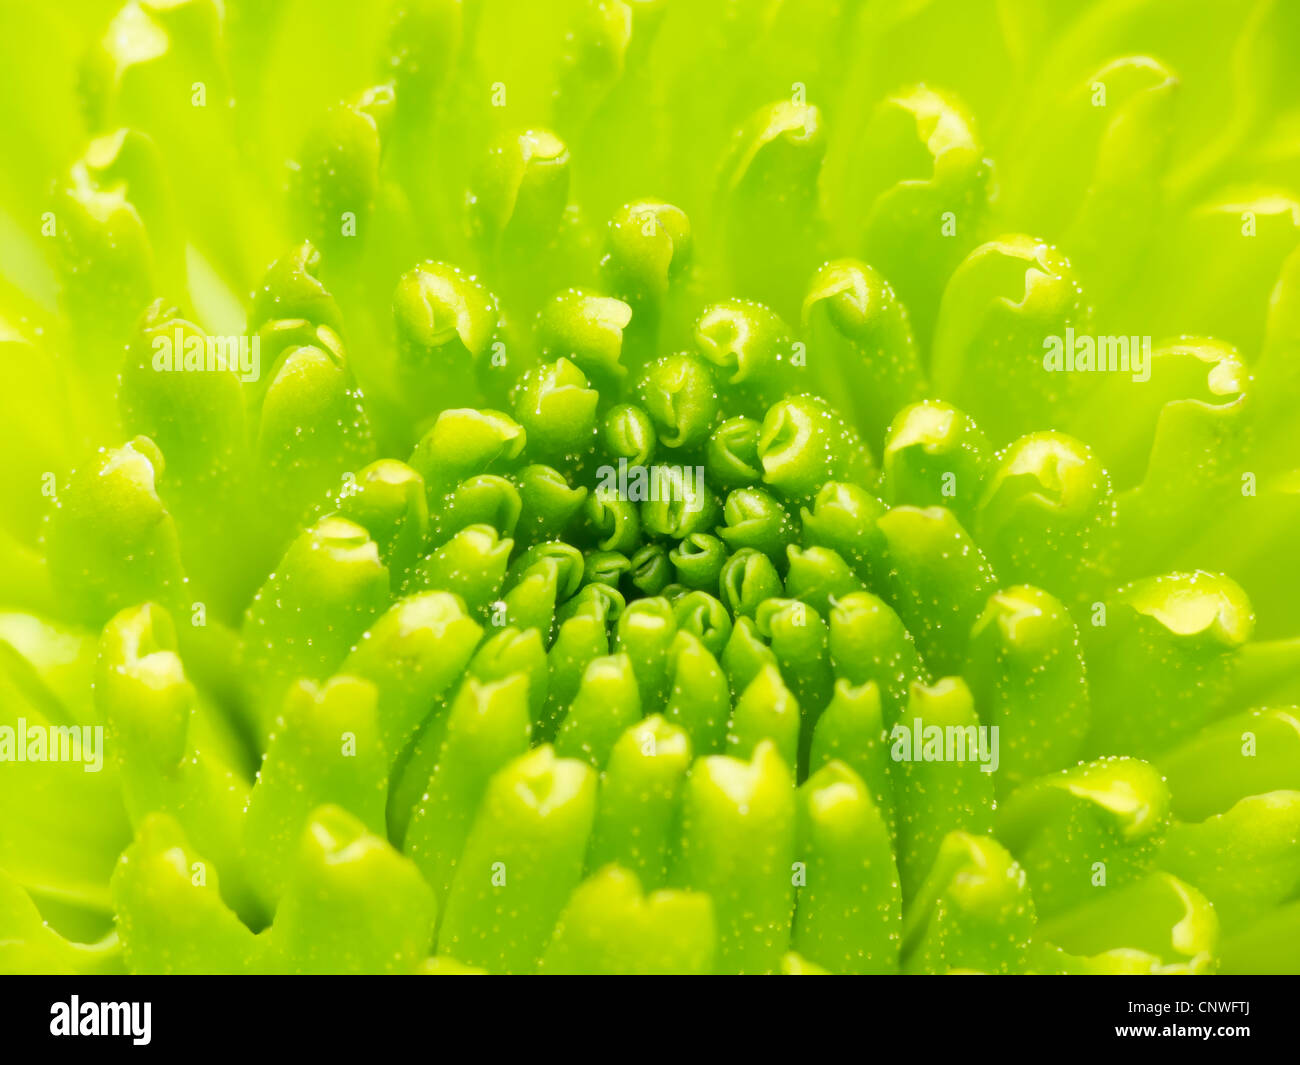 Grüne Chrysantheme Blume makro Zusammenfassung Stockfoto